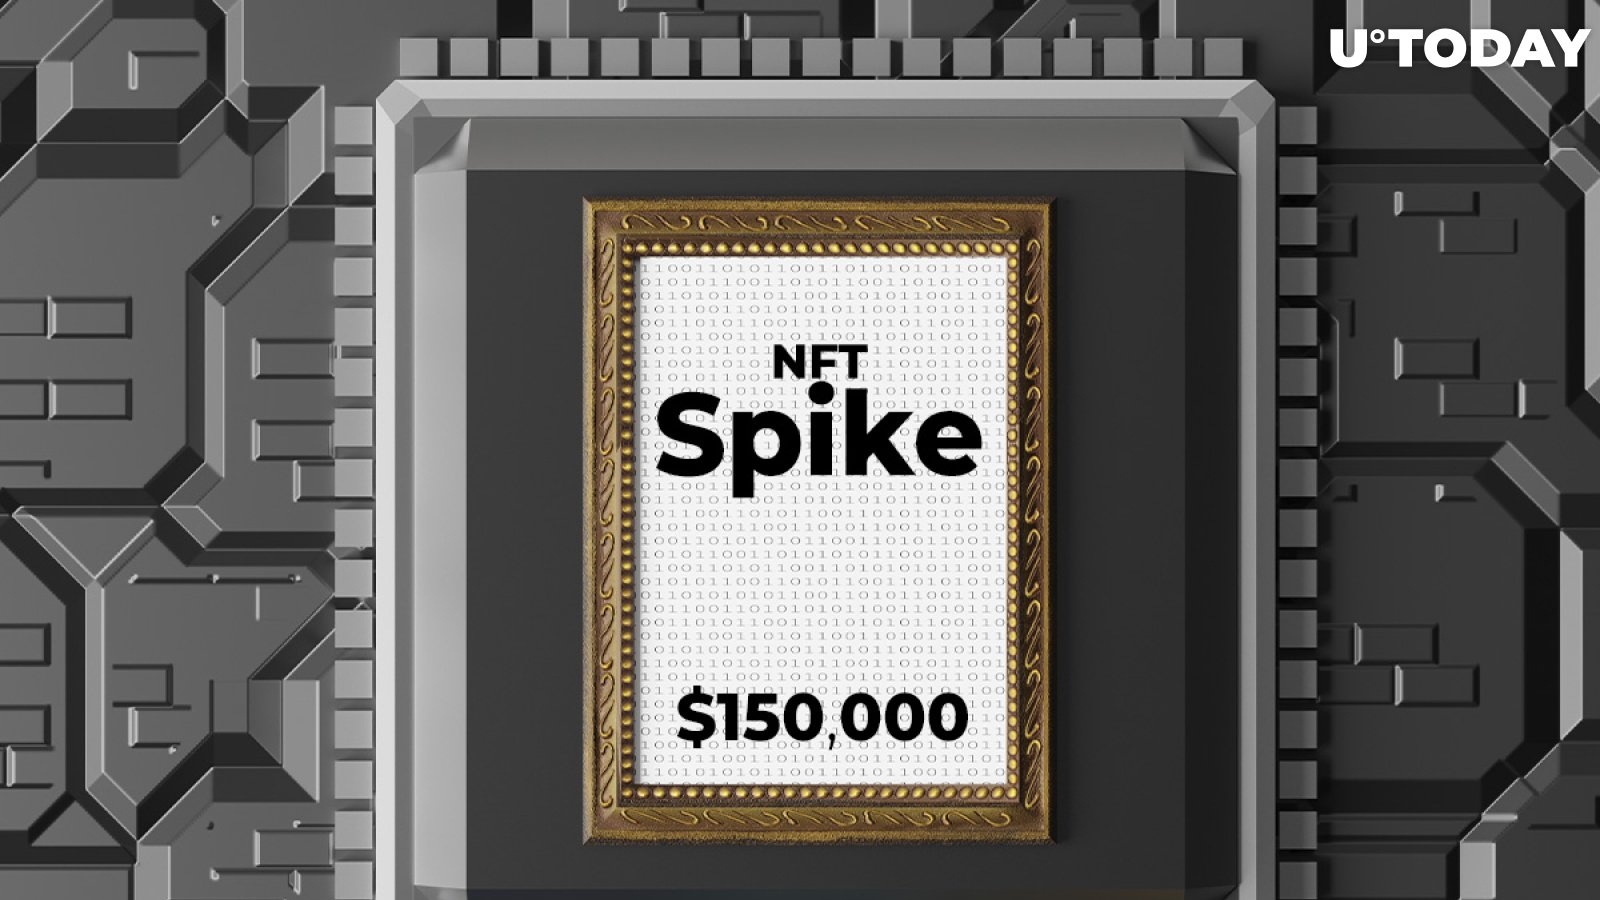 Banksy Artwork Based NFT “Spike” Sold For Over $150,000 On Valuart